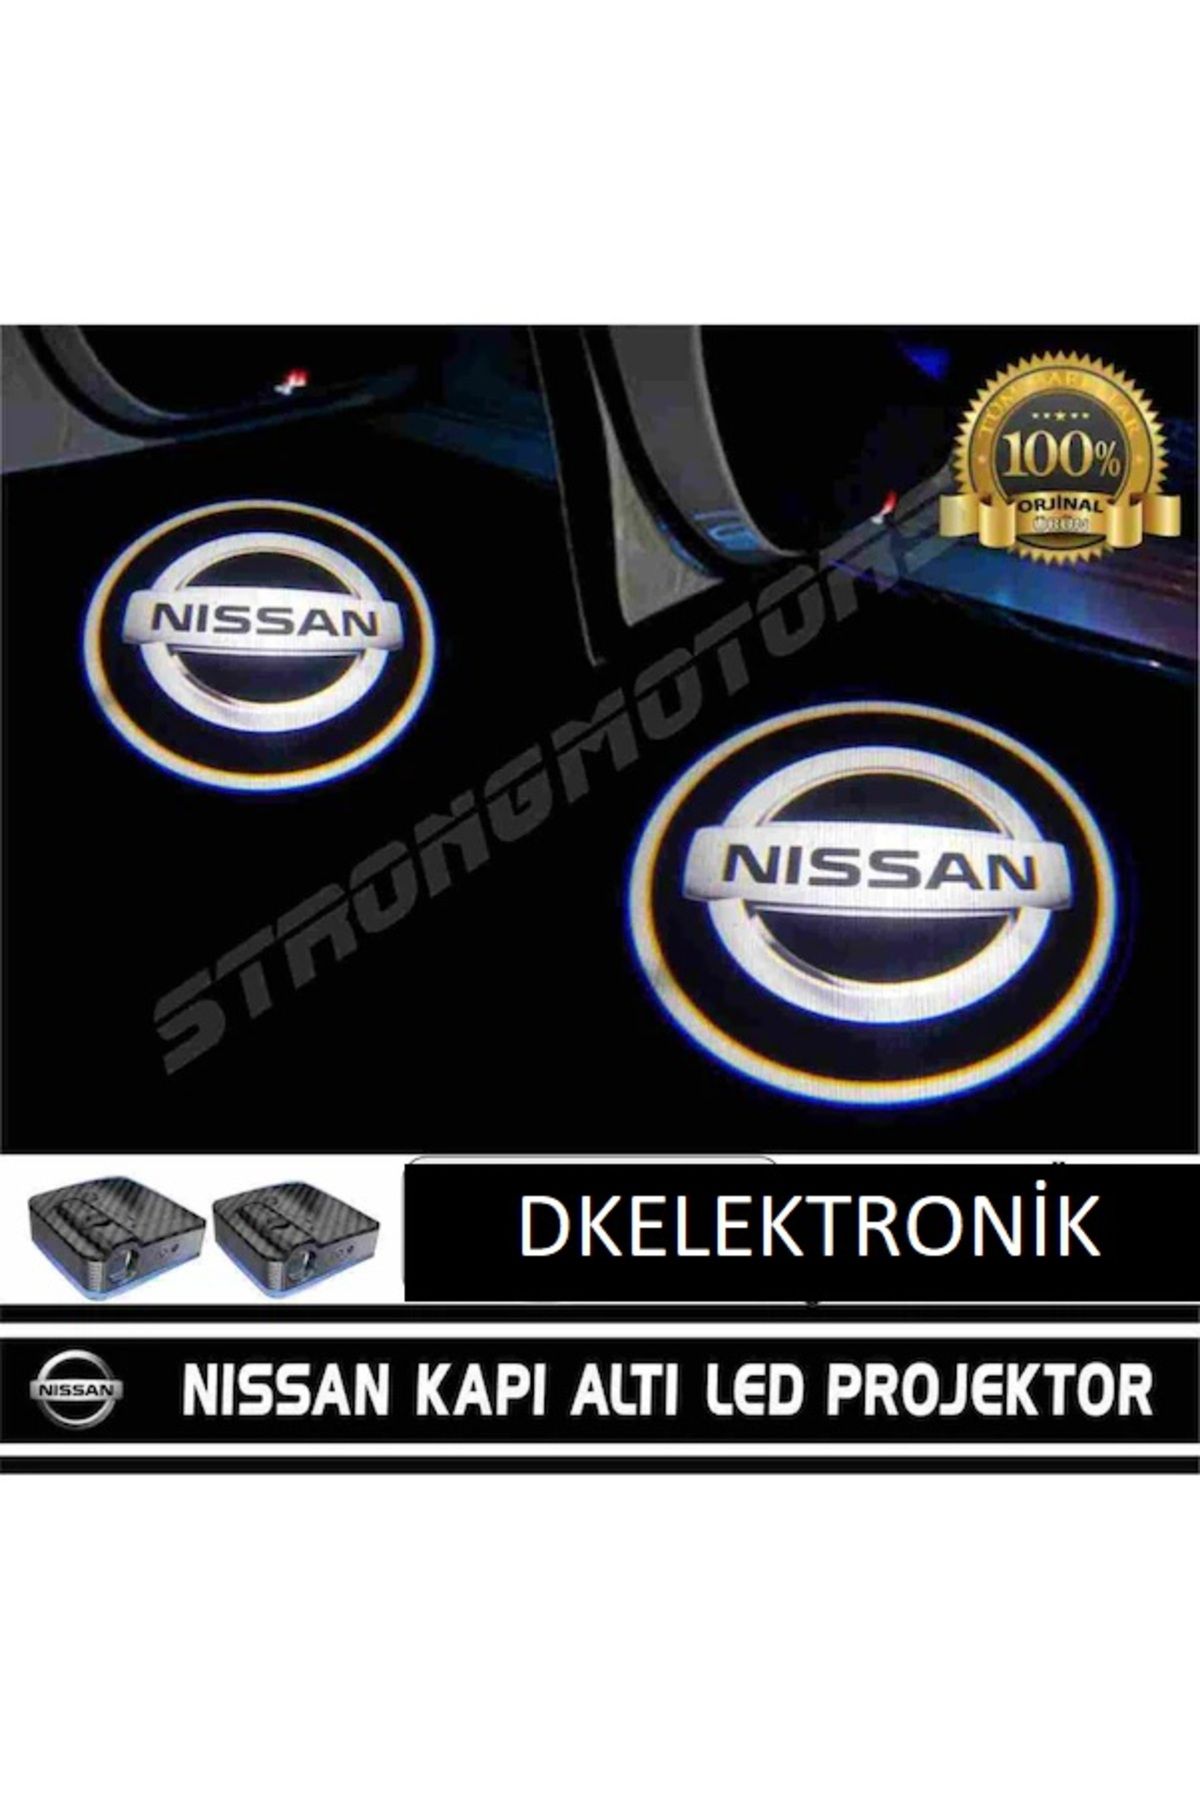 DKELEKTRONİK Nissan Araçlar İçin Pilli Yapıştırmalı Kapı Altı Led Logo 2 ADET